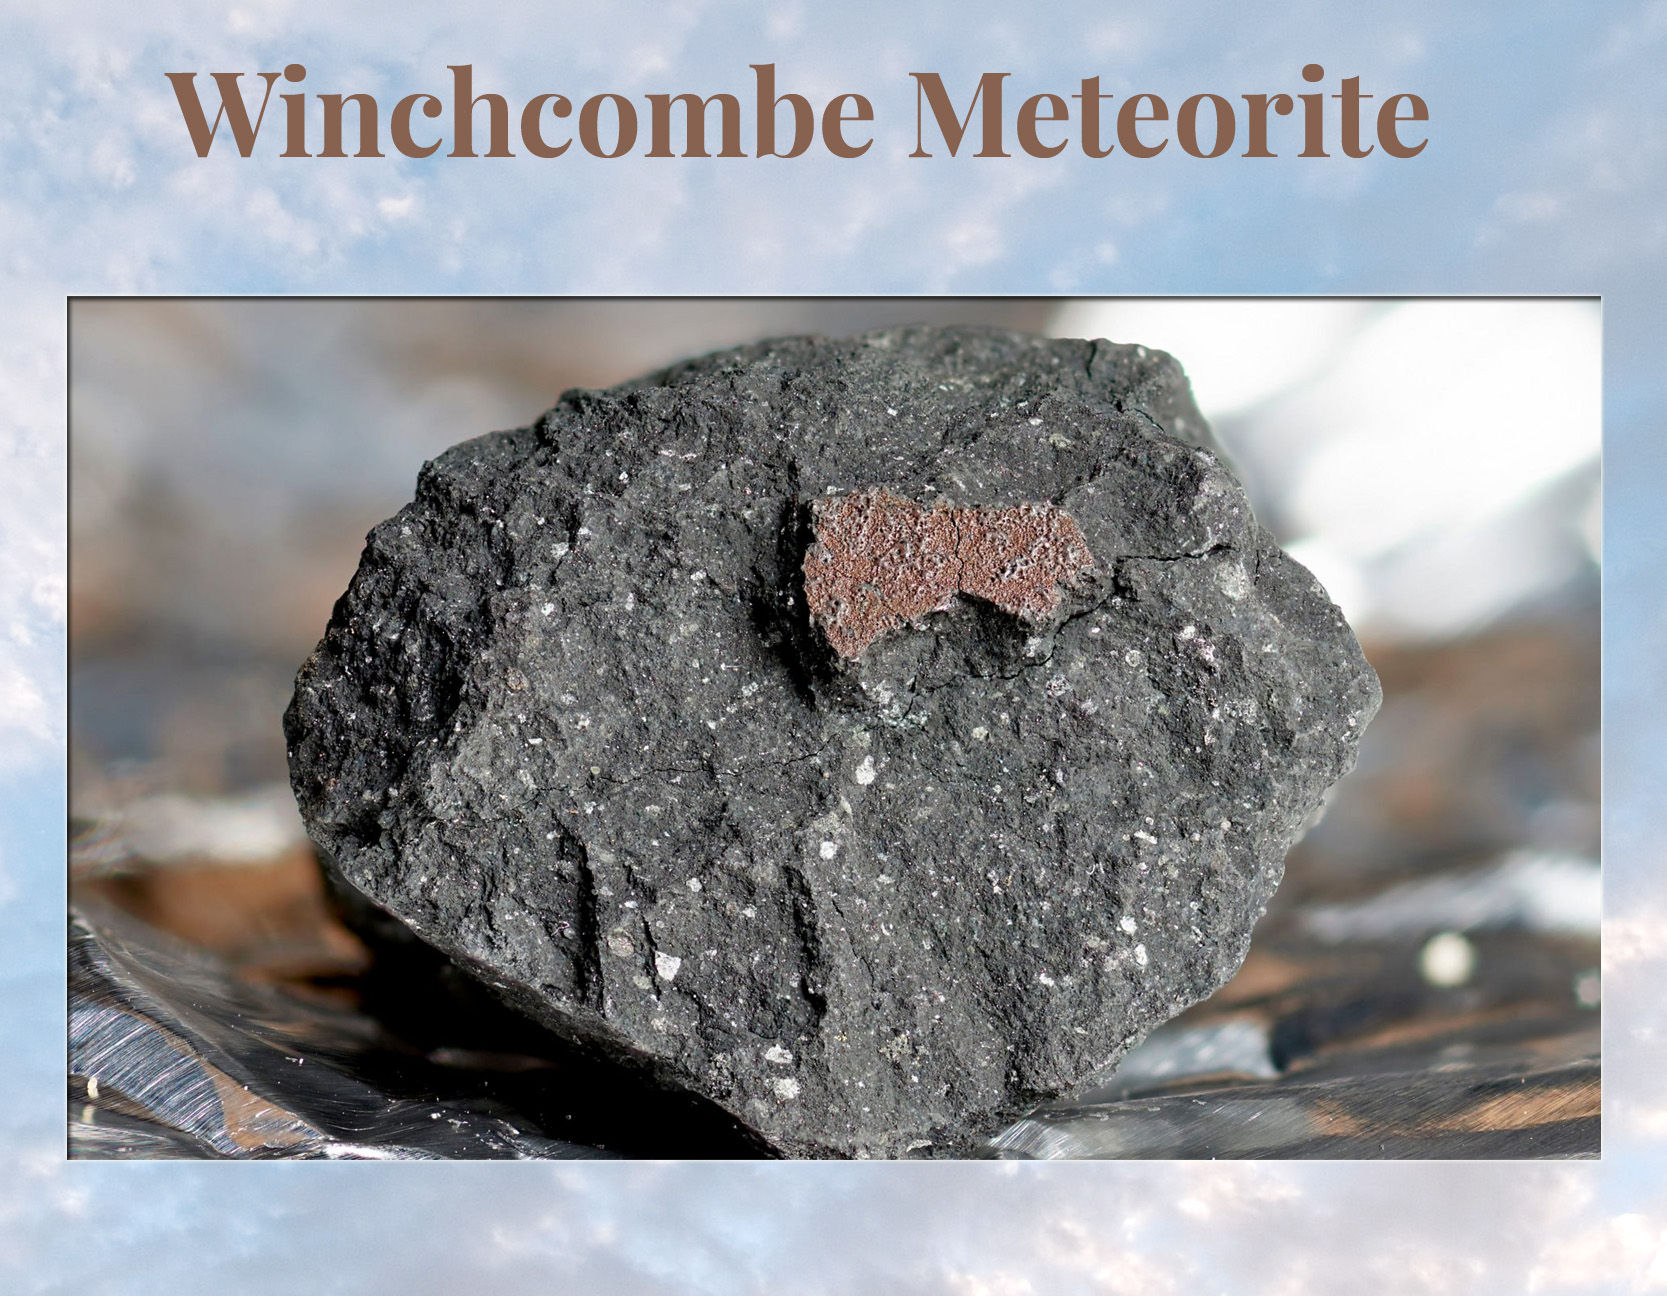 Winchcombe Meteorite